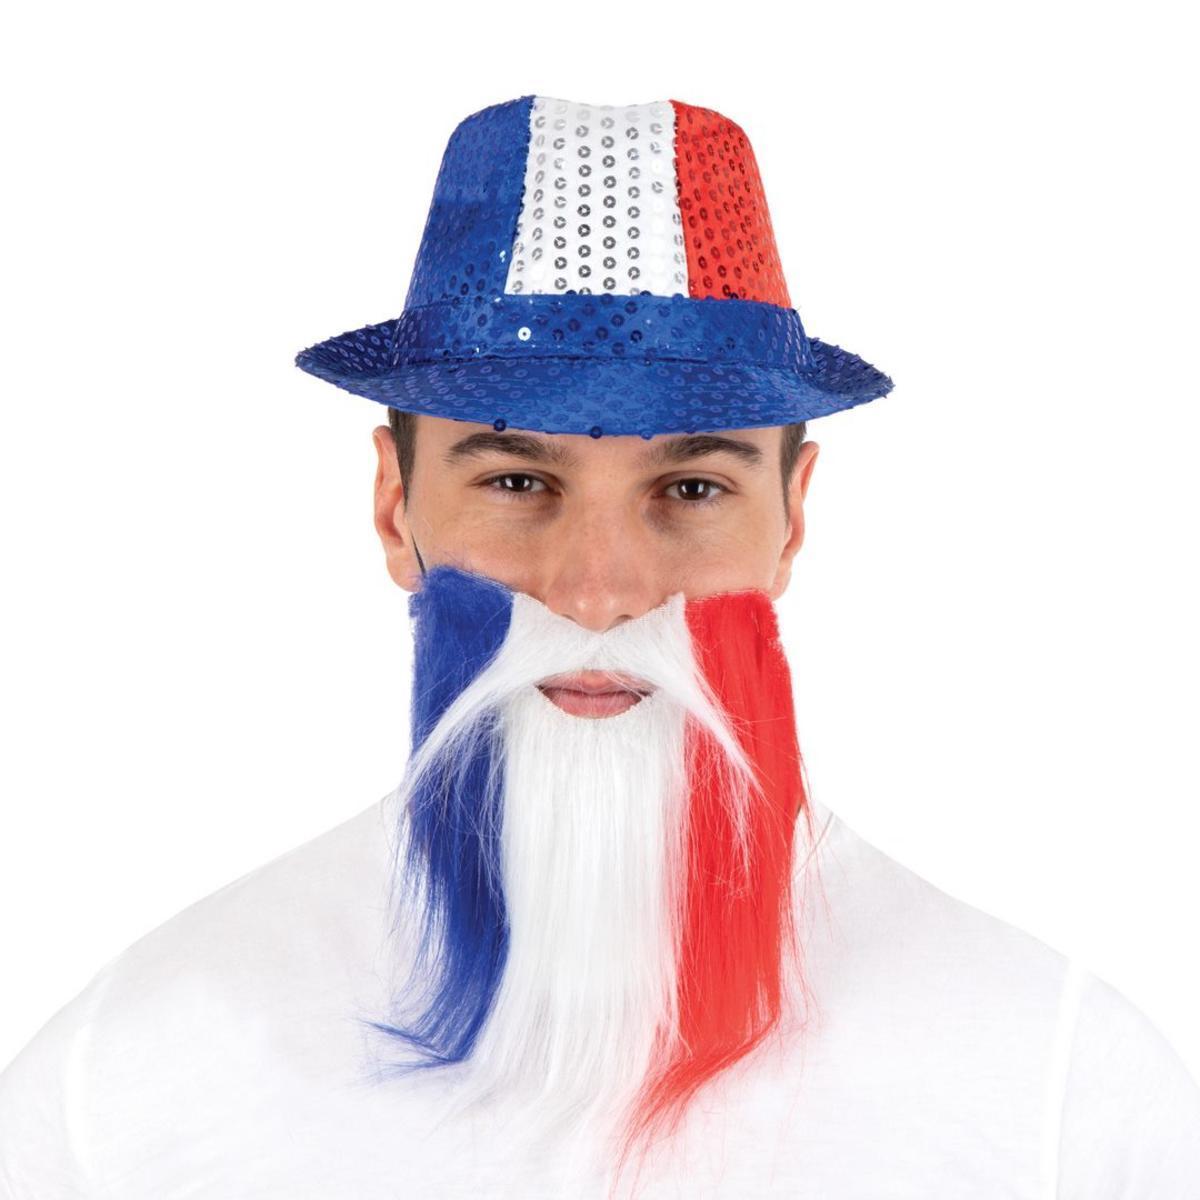 Déguisement Moustache + barbe tricolores - Taille adulte unique - 22 x 30 cm - Bleu, blanc, rouge